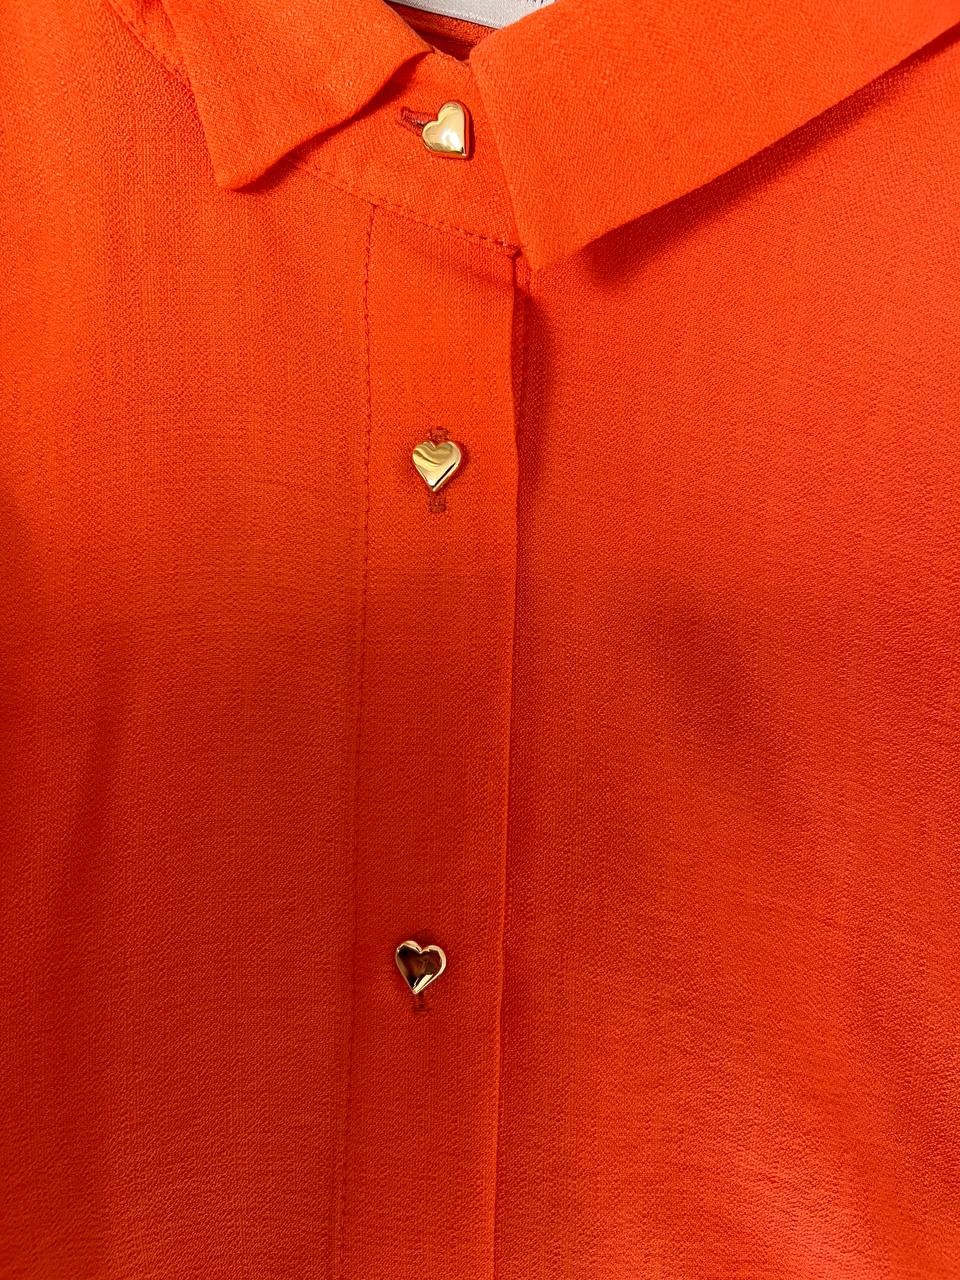 Traje naranja con shorts con botones en forma de corazón.